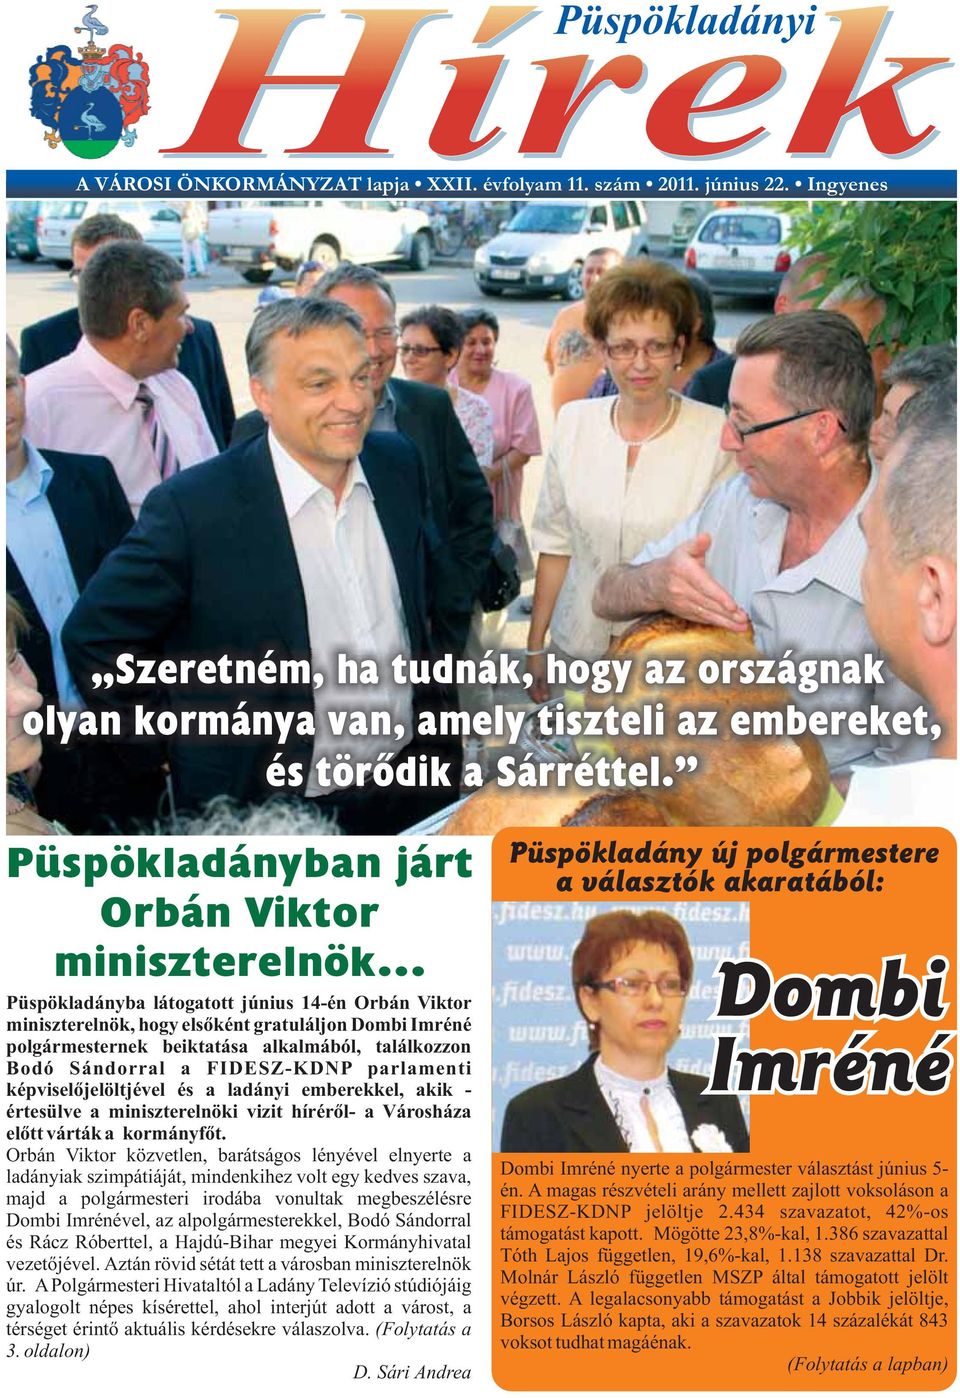 Püspökladányban járt Orbán Viktor miniszterelnök Püspökladányba látogatott június 14-én Orbán Viktor miniszterelnök, hogy elsőként gratuláljon Dombi Imréné polgármesternek beiktatása alkalmából,